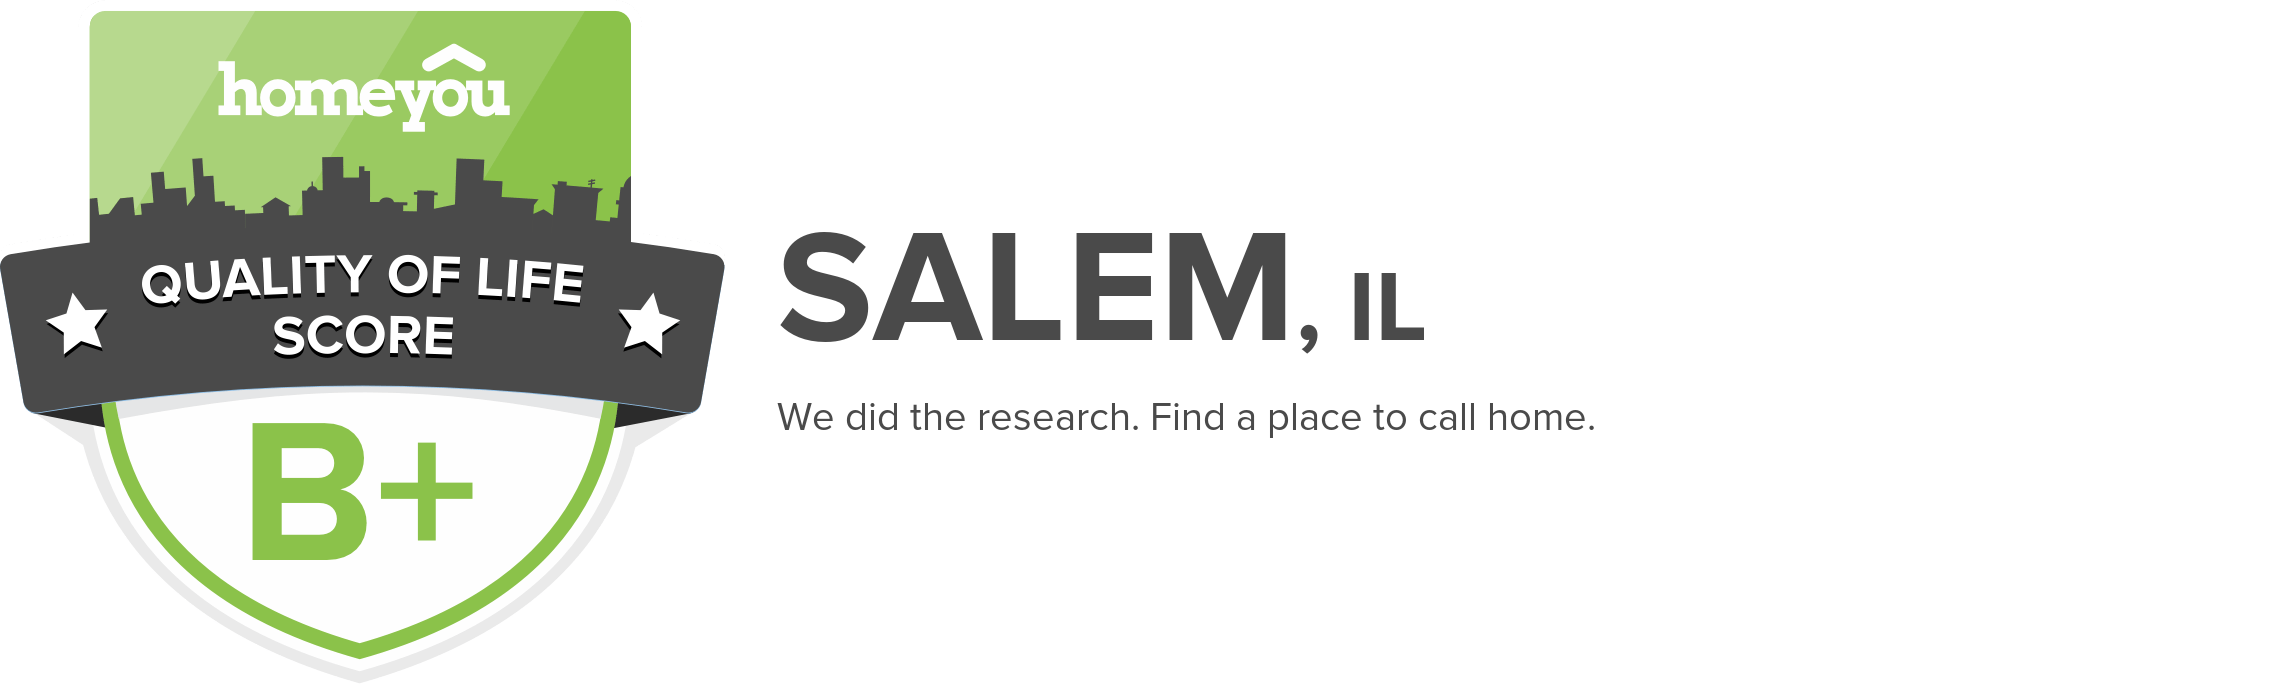 Salem, IL